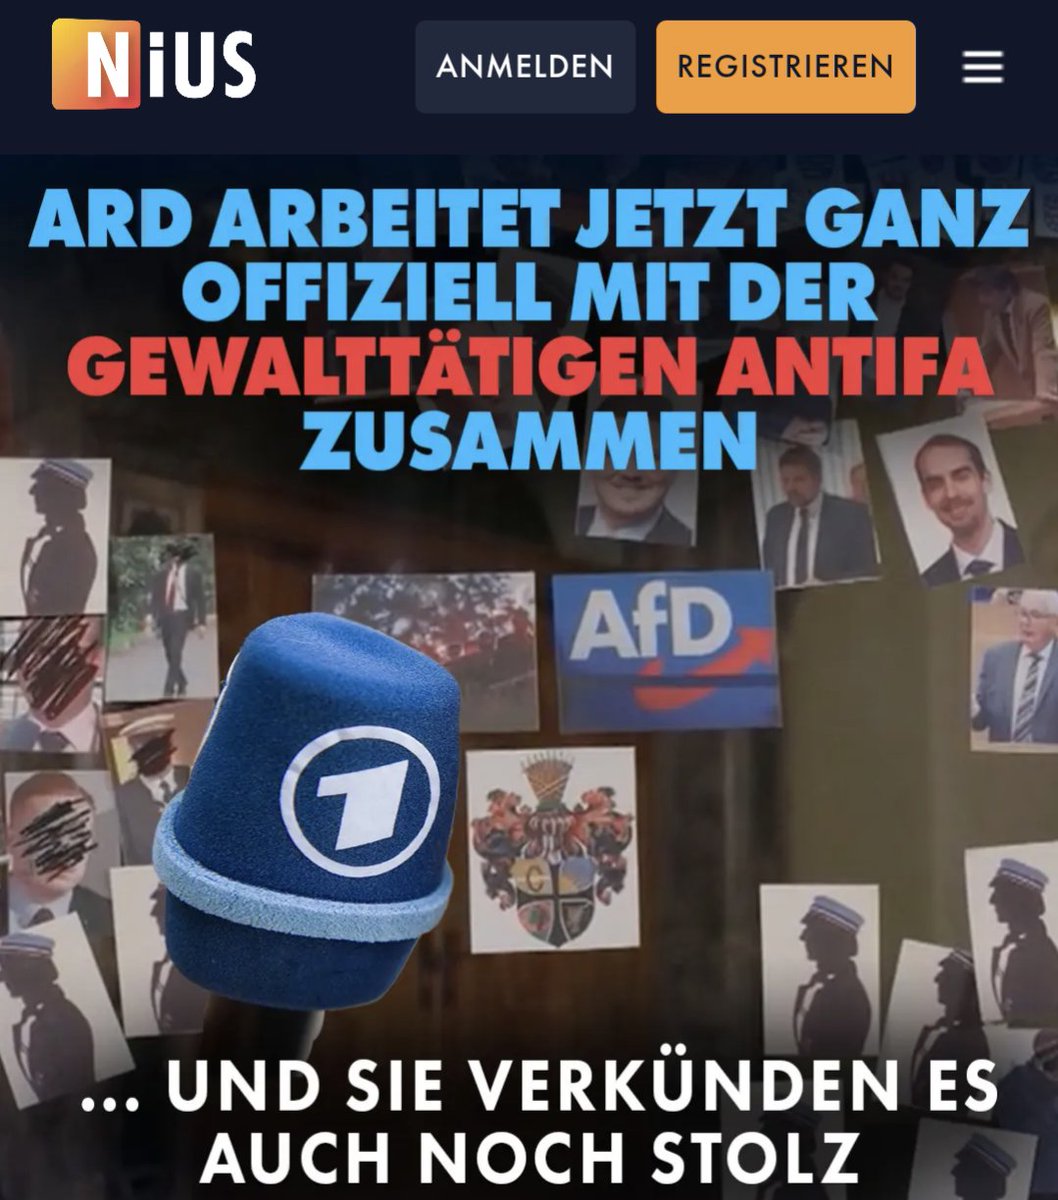 Voller Stolz verkündet die ARD ganz offiziell, dass sie jetzt mit der gewalttätigen Antifa zusammenarbeitet. Mit den Leuten, die Anschläge und Angriffe auf Politiker planen und umsetzen. nius.de/medien/ard-arb…